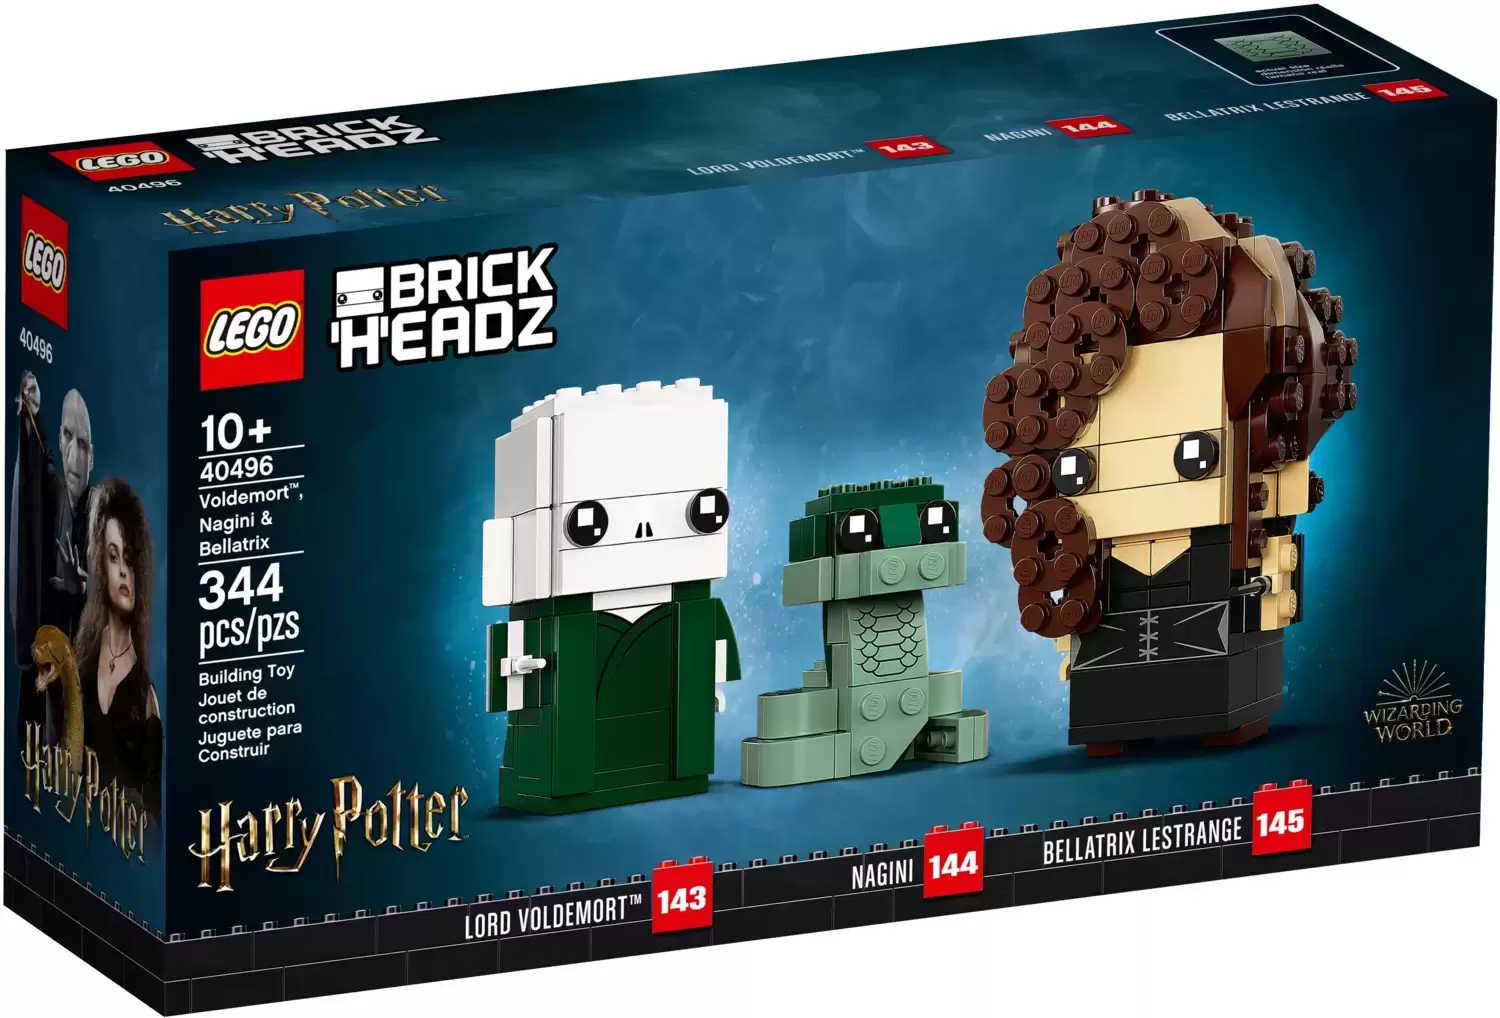 LEGO BrickHeadz - 143, 144 & 145 - Voldemort, Nagini & Bellatrix